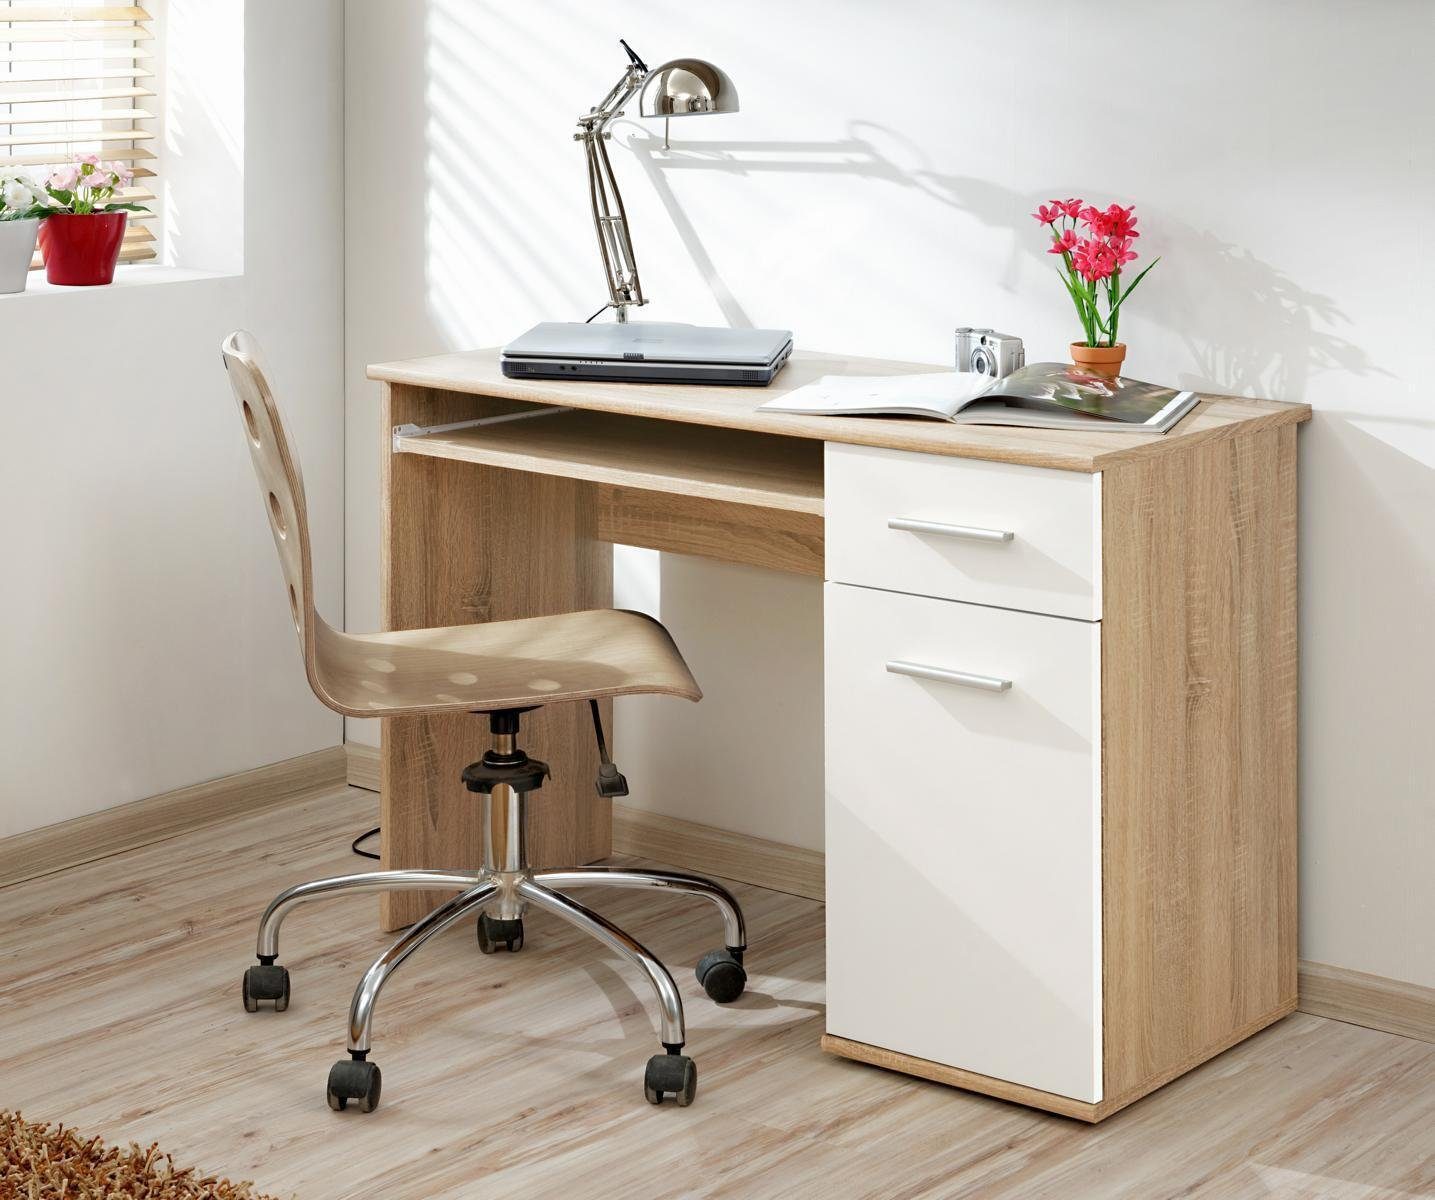 JVmoebel Schreibtisch Schlafzimmer Modern Designer Holz Möbel Neu, Made in Europa